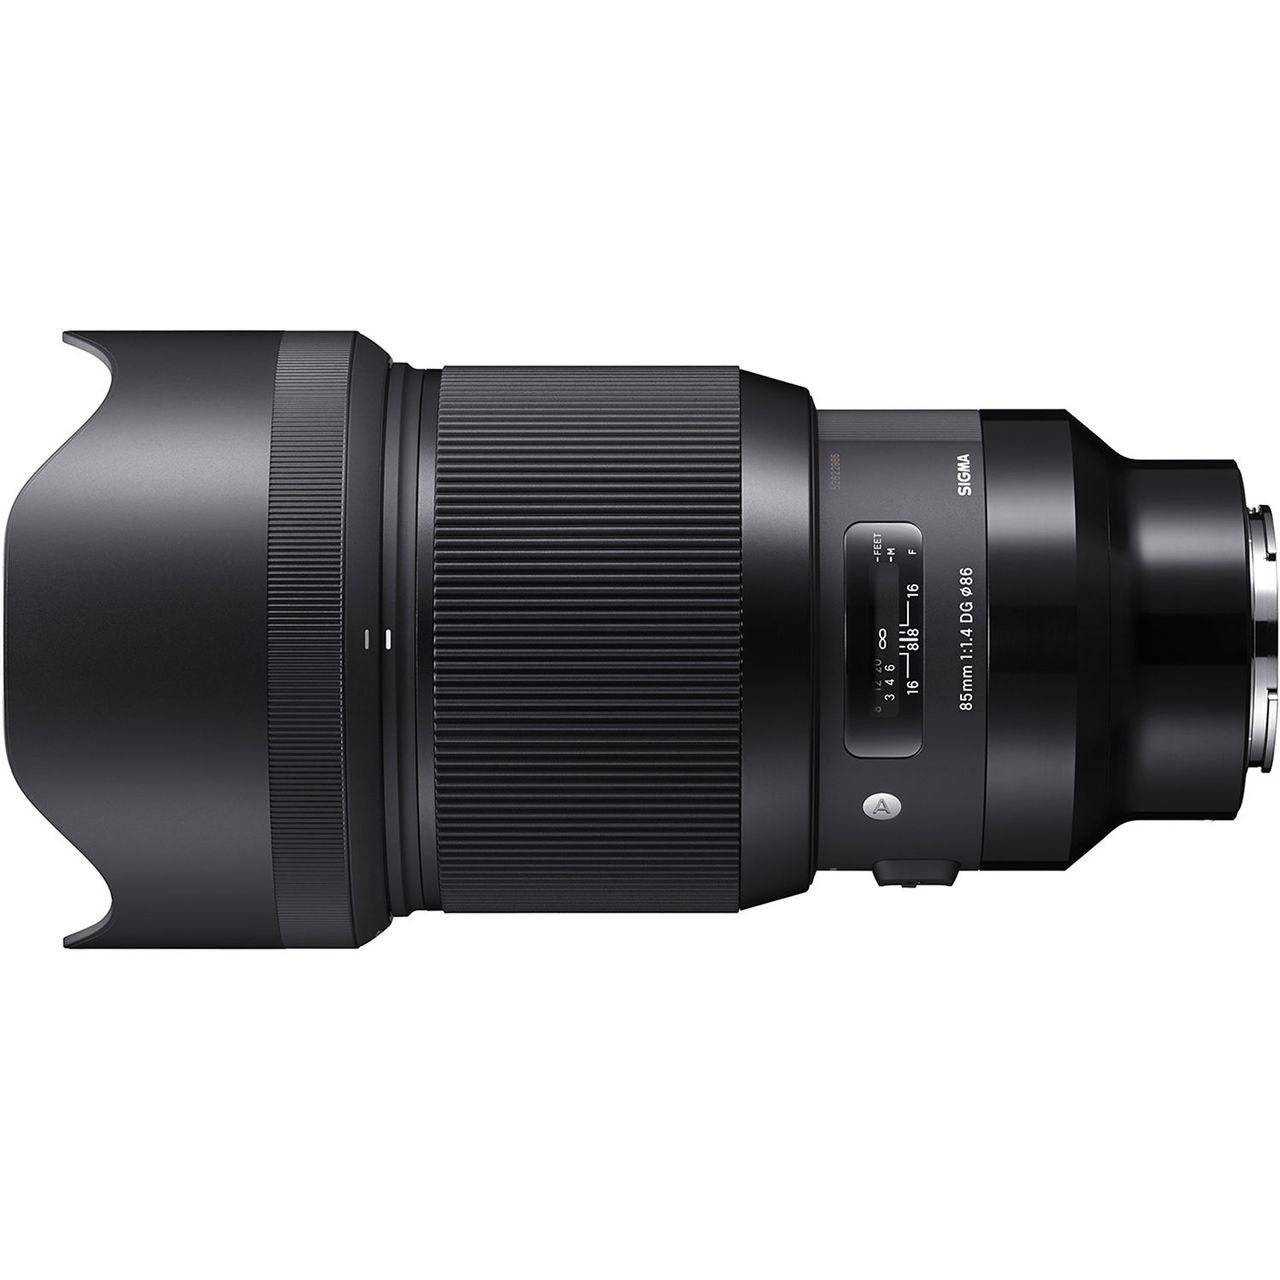 Sigma 85mm f/1.4 DG HSM Art Lens for Sony E (A7 & A9) at Acephoto.net